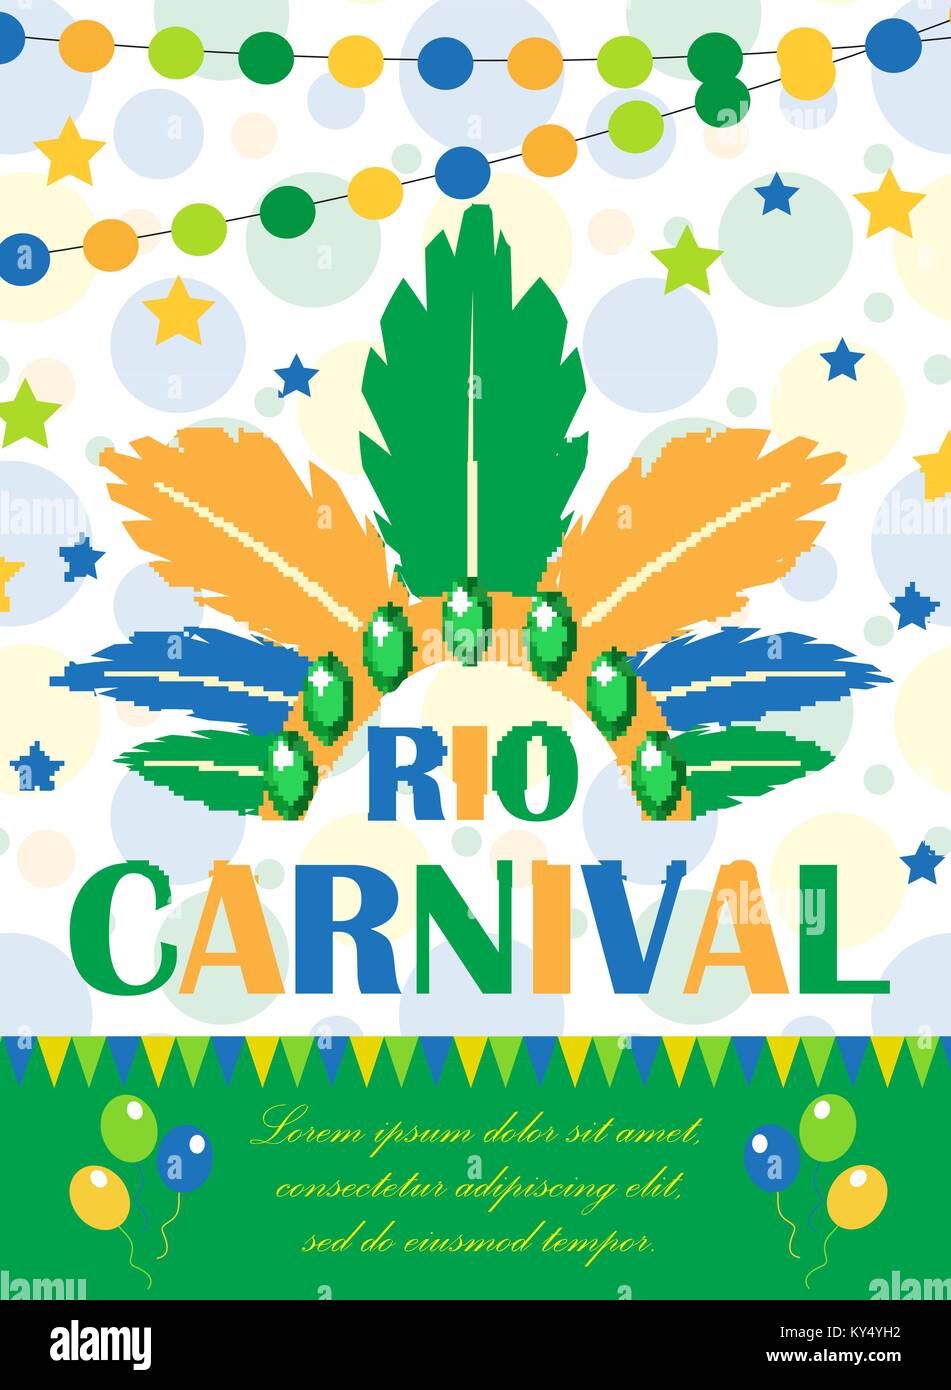 Carnaval de Rio affiche, invitation, flyer. Modèle pour votre conception. Festival brésilien Masquerade, arrière-plan. Le Brésil a concept. Vector illustration. Illustration de Vecteur